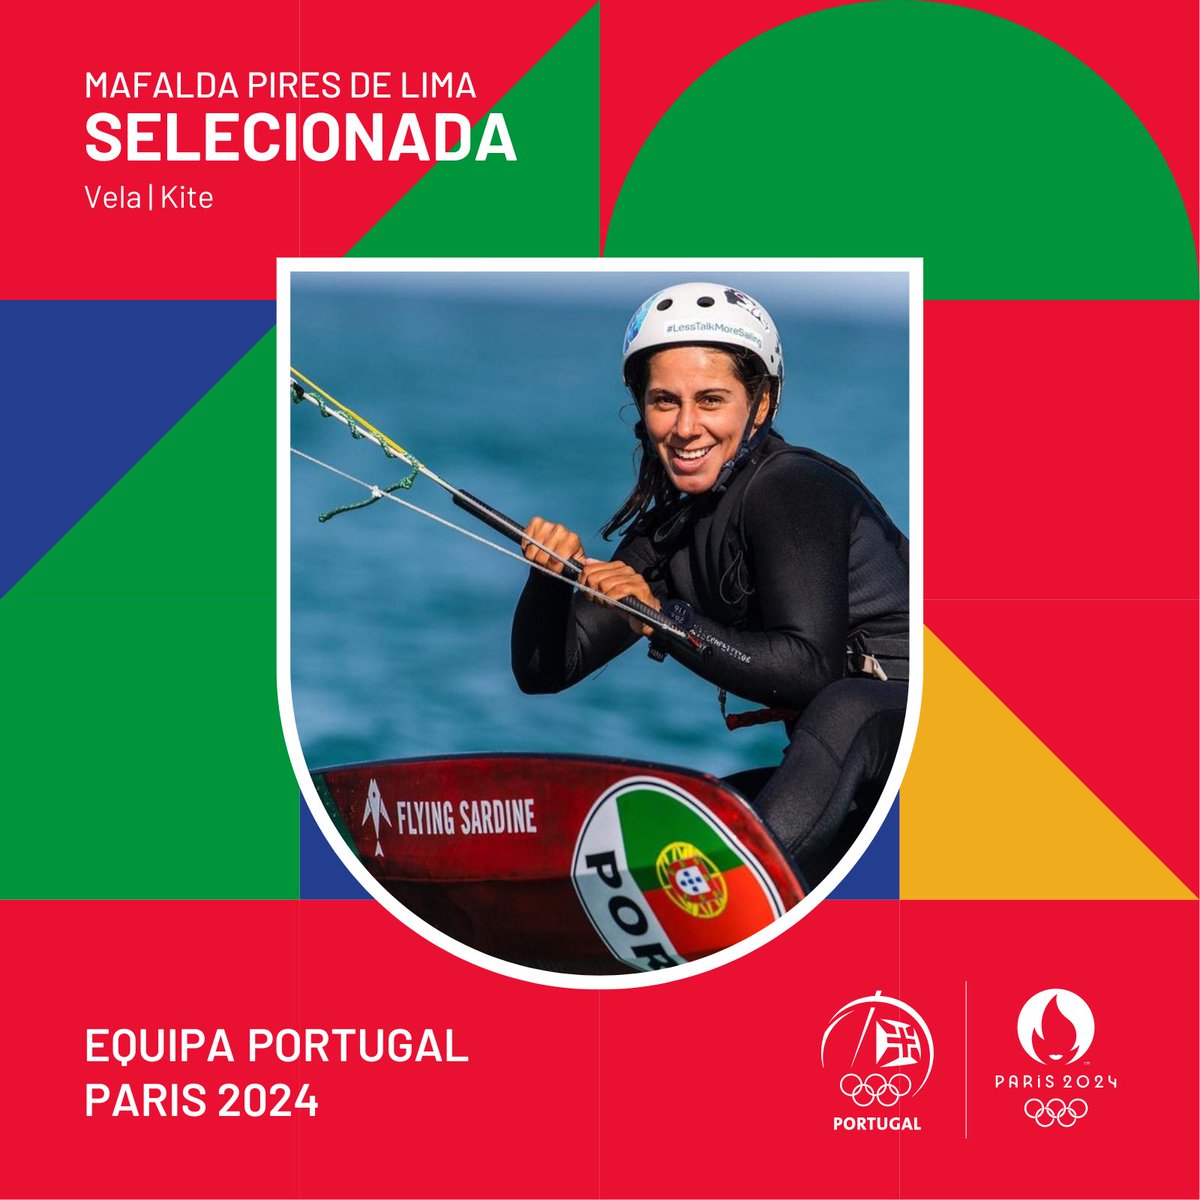 SELECIONADA PARA PARIS 2024!!! 🇫🇷🔜

Mafalda Pires de Lima conquistou uma quota nacional para Paris 2024 no Kite feminino da modalidade de Vela durante a última regata de qualificação, disputada em Hyères, França. 👏

#EquipaPortugal #RoadtoParis2024